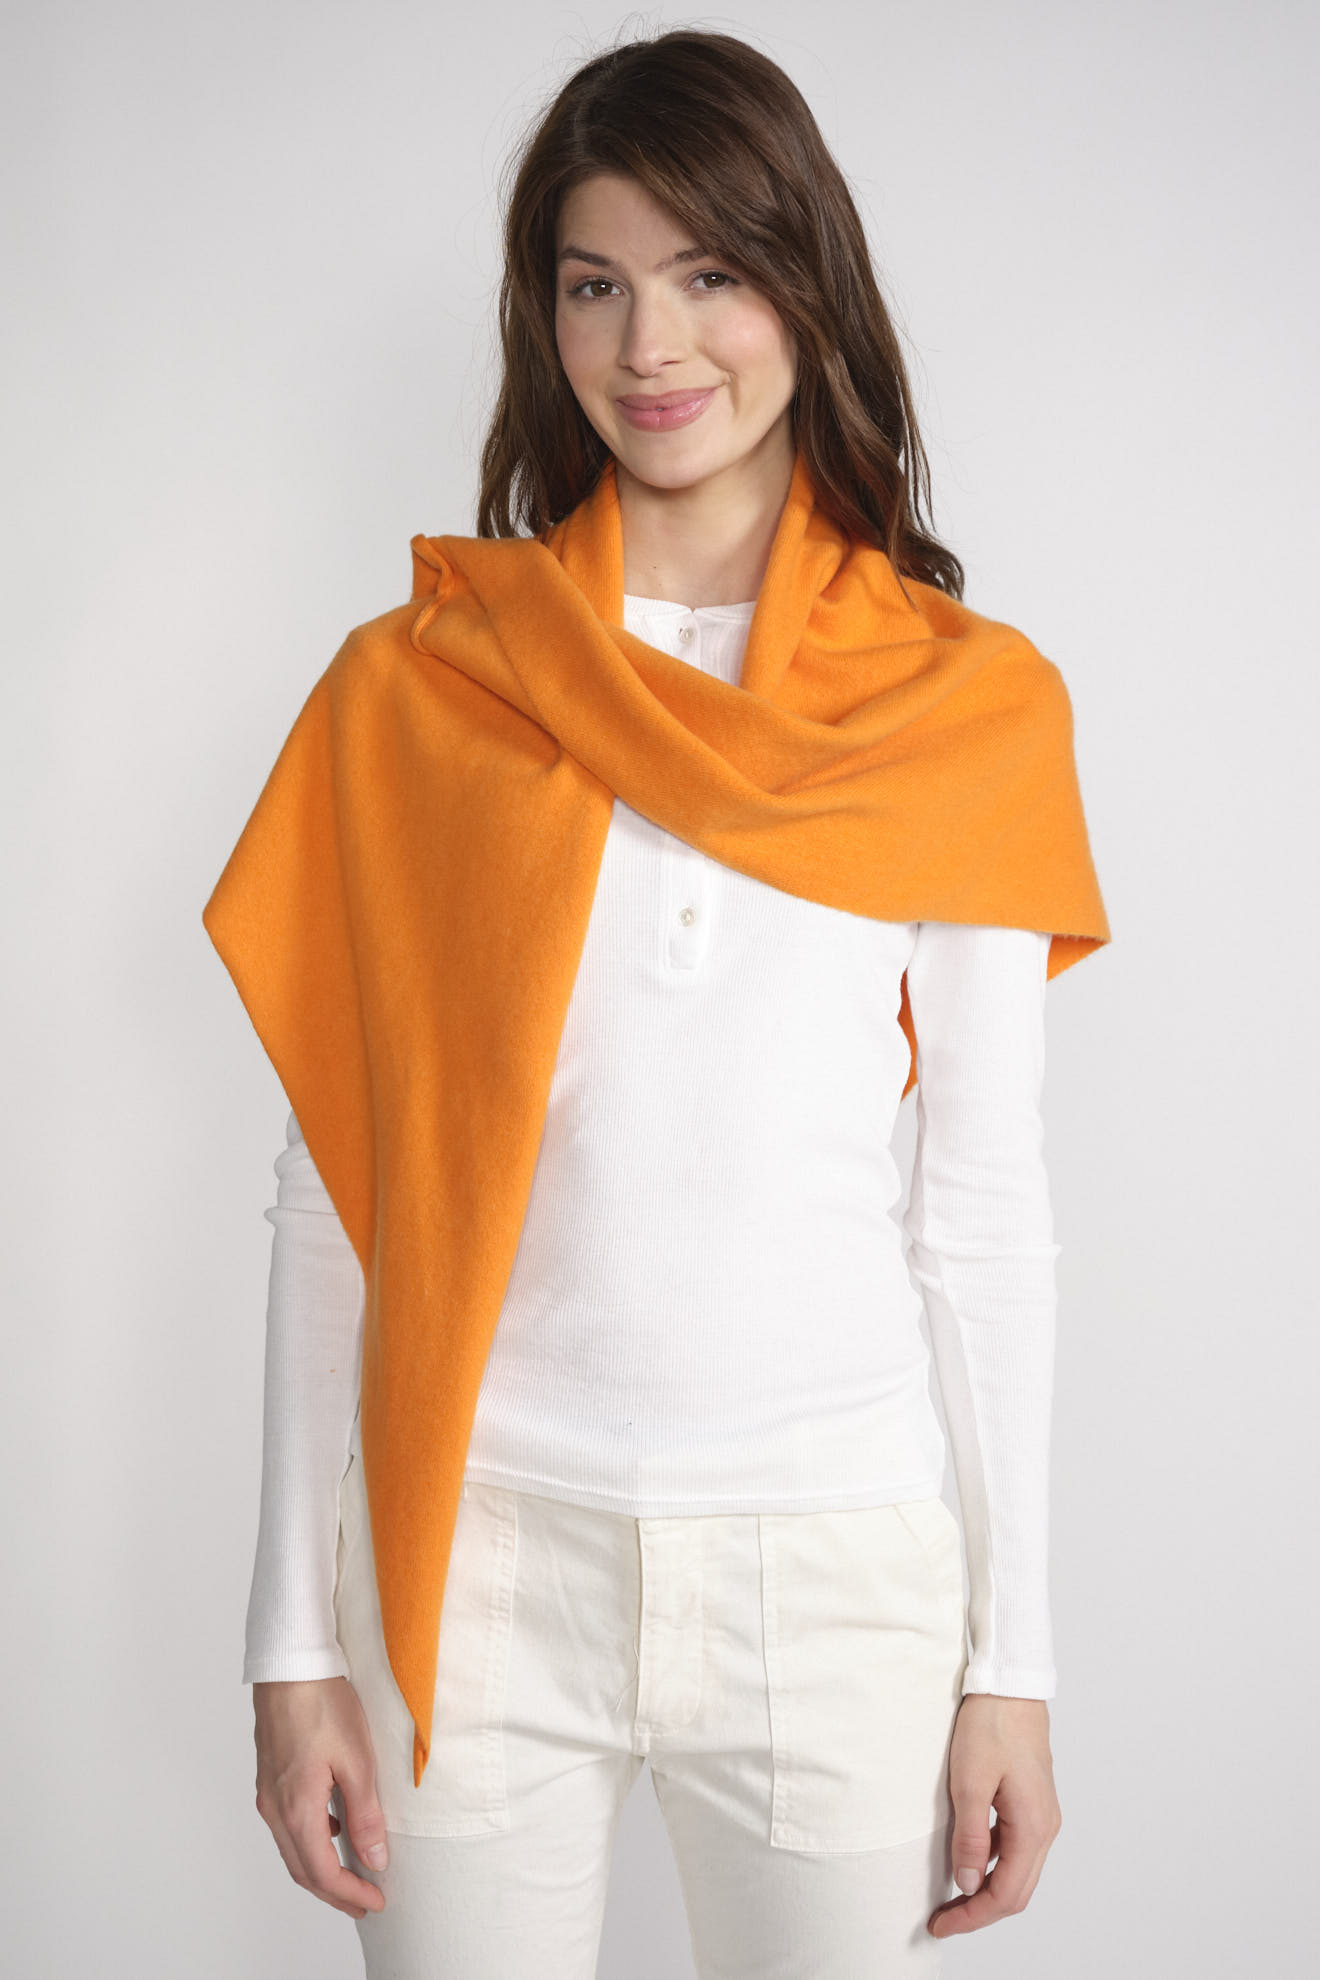 Extreme Cashmere n° 150 Witch - Sciarpa triangolare in cashmere arancione Taglia unica